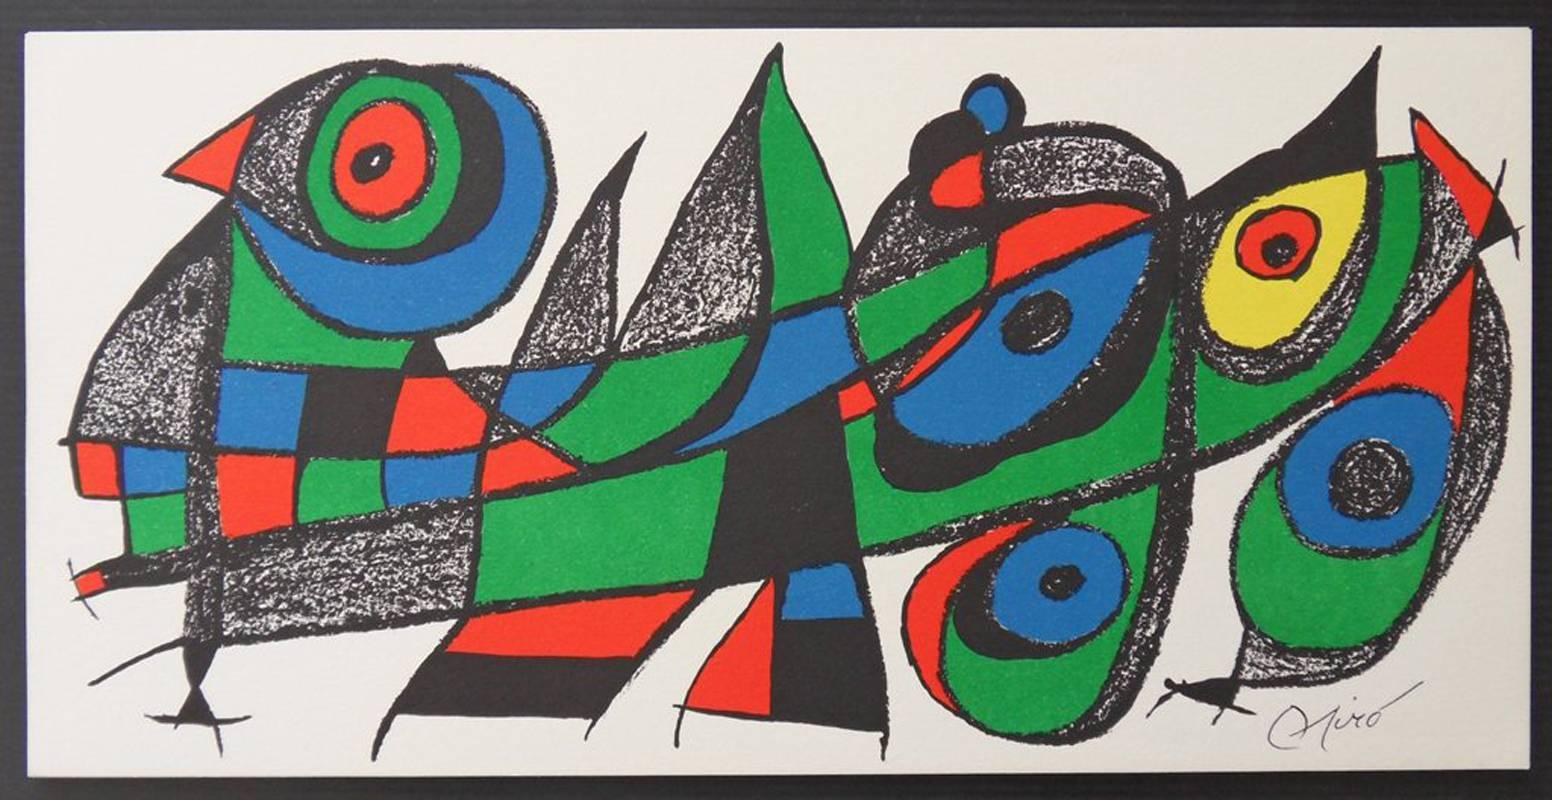 Joan Miró Print - Escultor : Japan - Original lithograph - 1500 copies